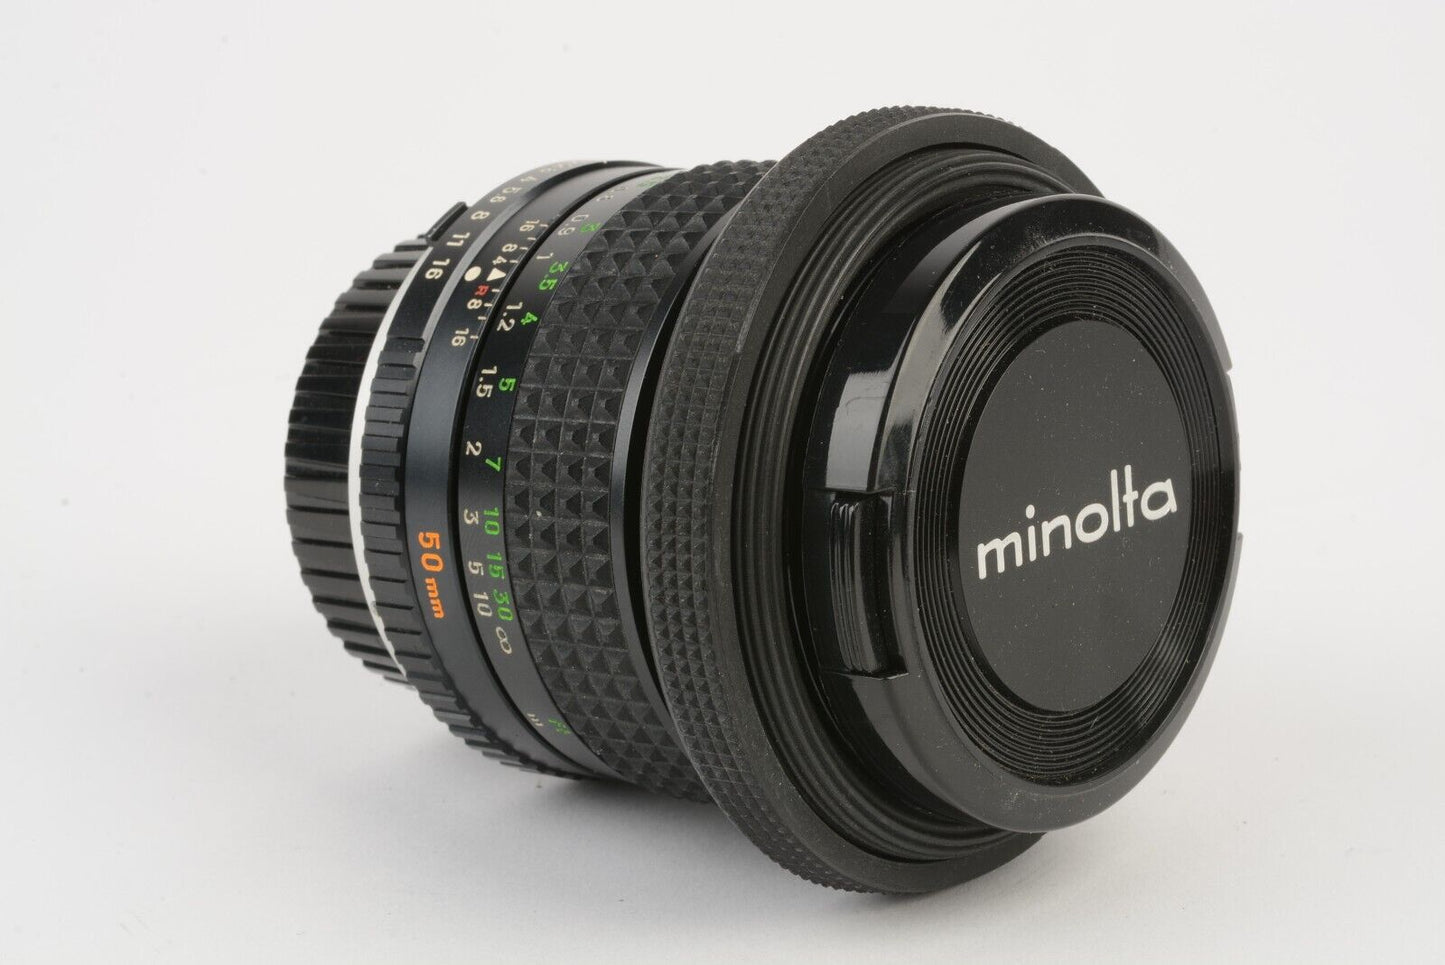 EXC++ MINOLTA MC ROKKOR-X 50mm F1.4 LENS FOR MD MOUNT, CAPS, HOOD, 1A, SHARP!